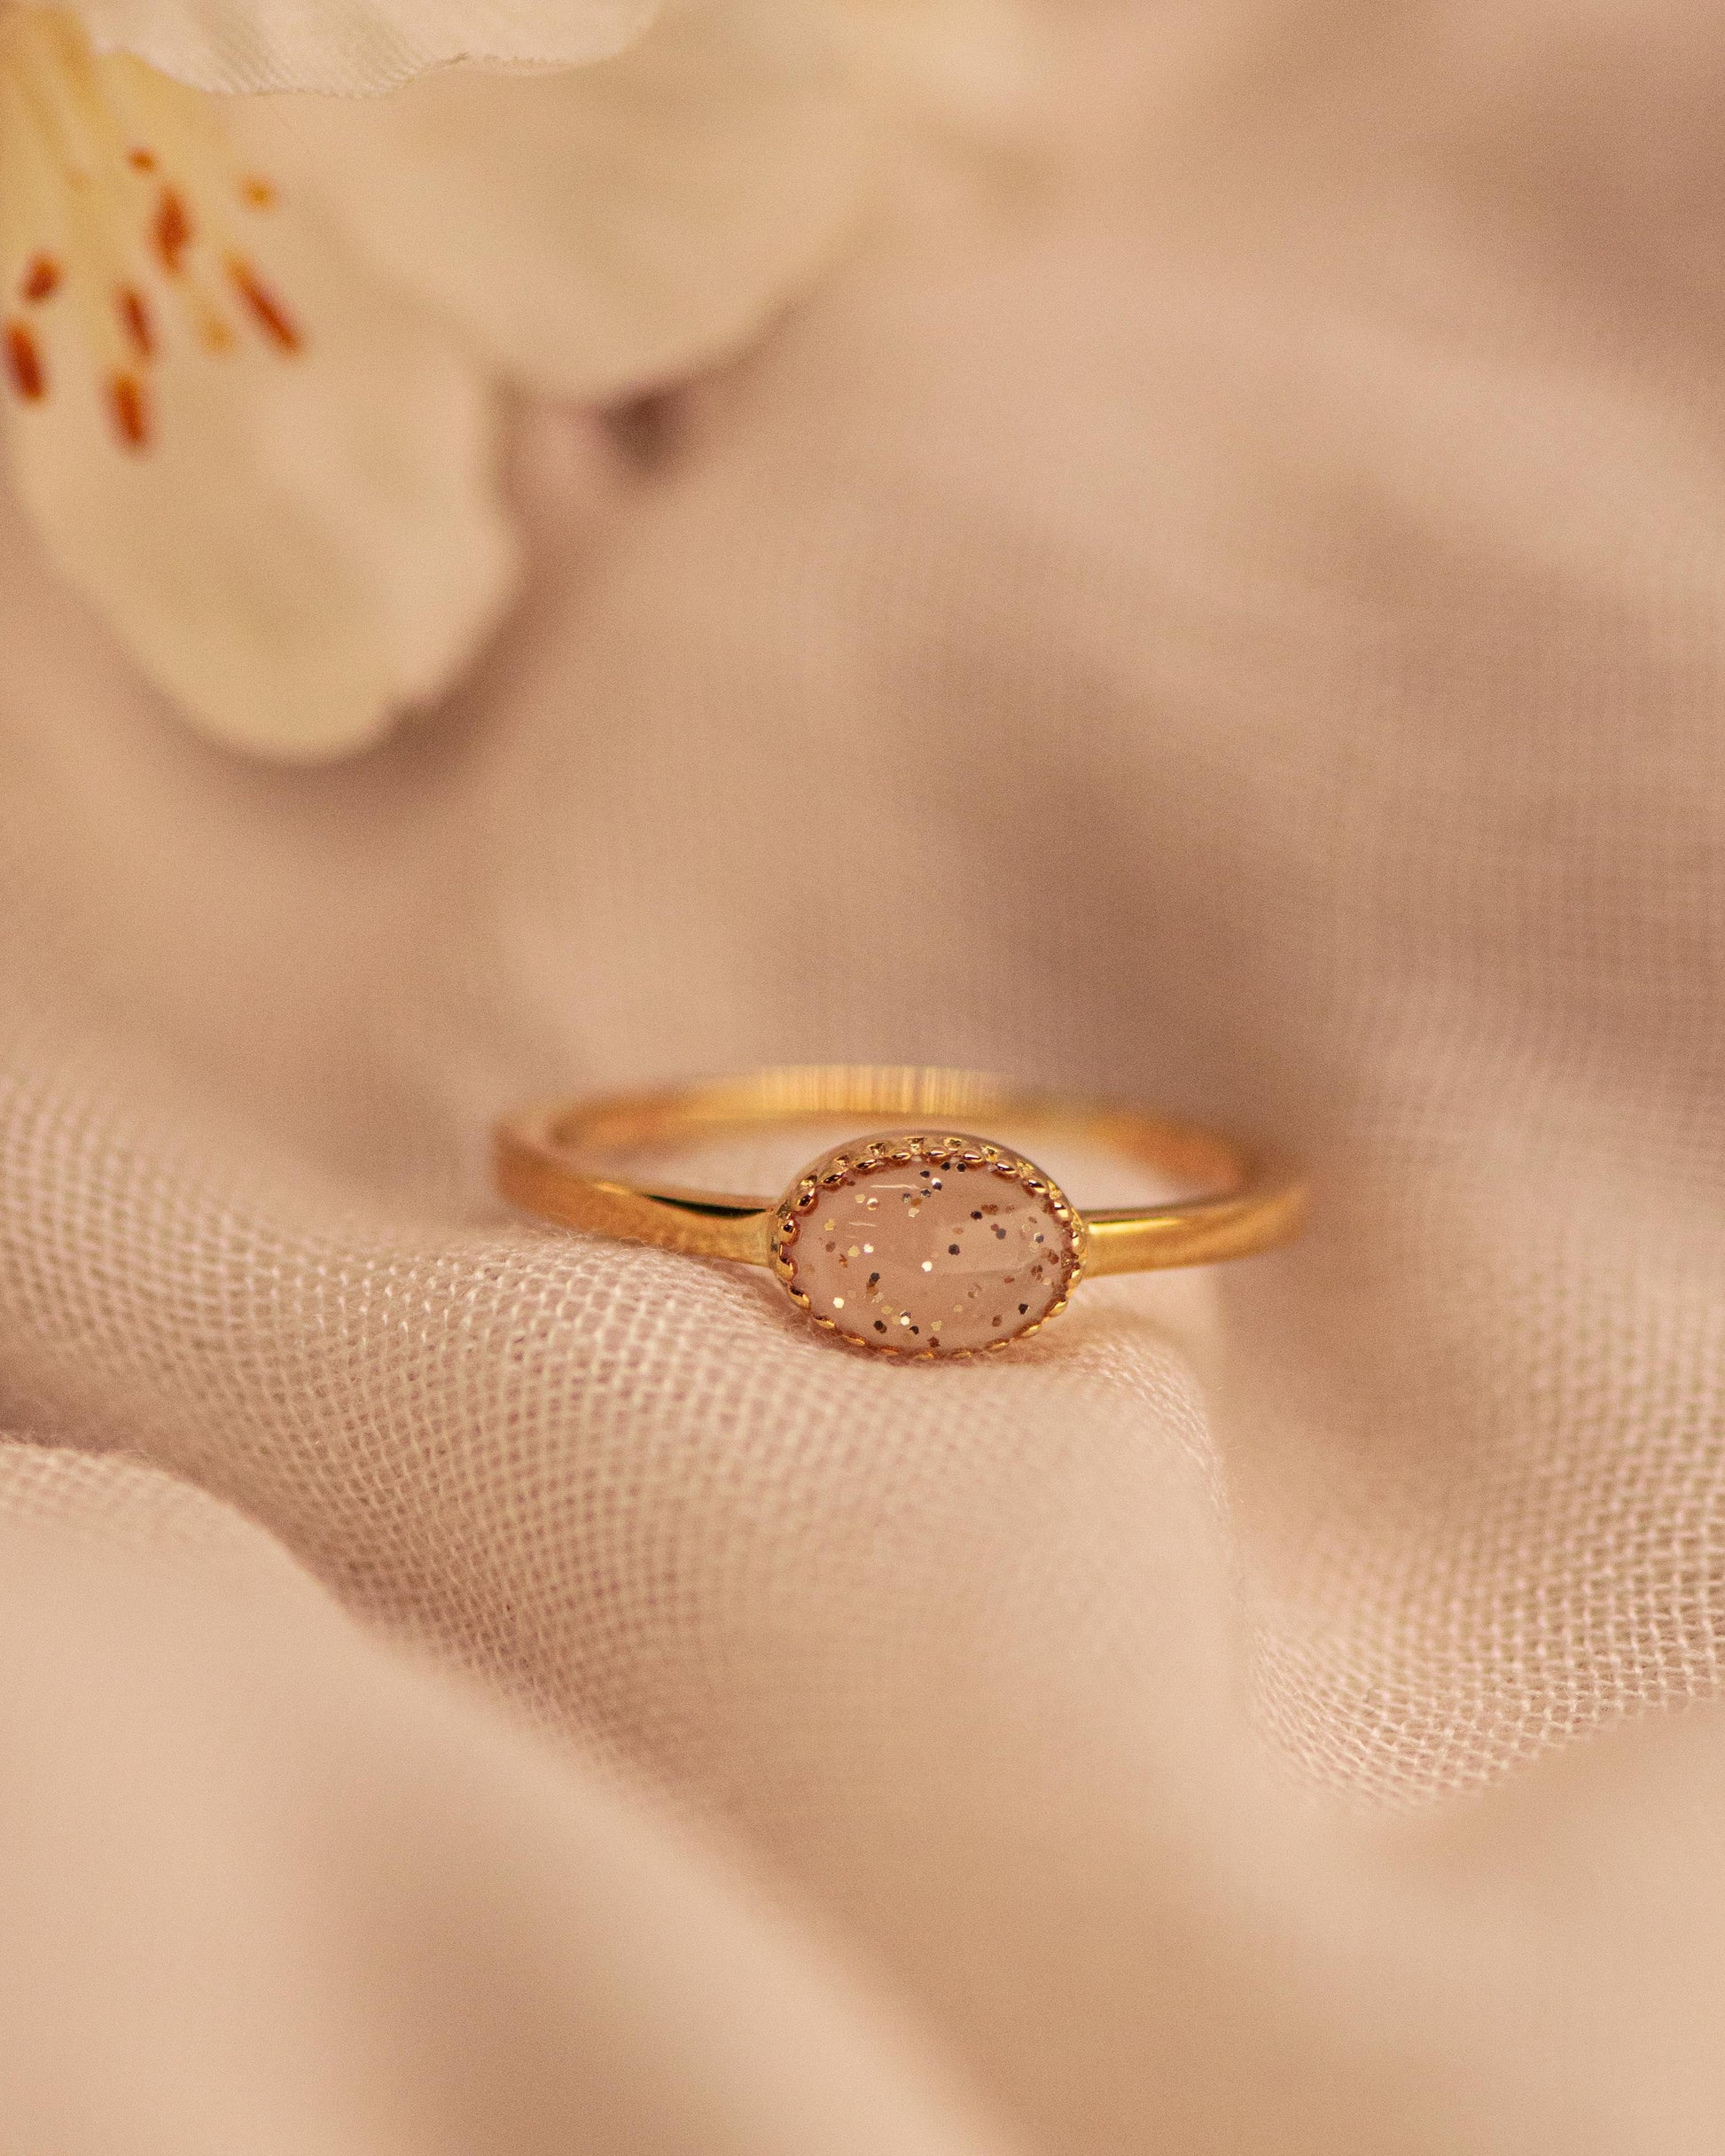 Afmeting ovaal: 8x6 mm, Ringband: 1.5 mm. Gedenksieraad, ring met een hartje er boven op , waar zichtbaar as of haar  in verwerkt wordt. De asring is leverbaar in zilver en in 14 en 18 KT geelgoud/witgoud en roségoud.